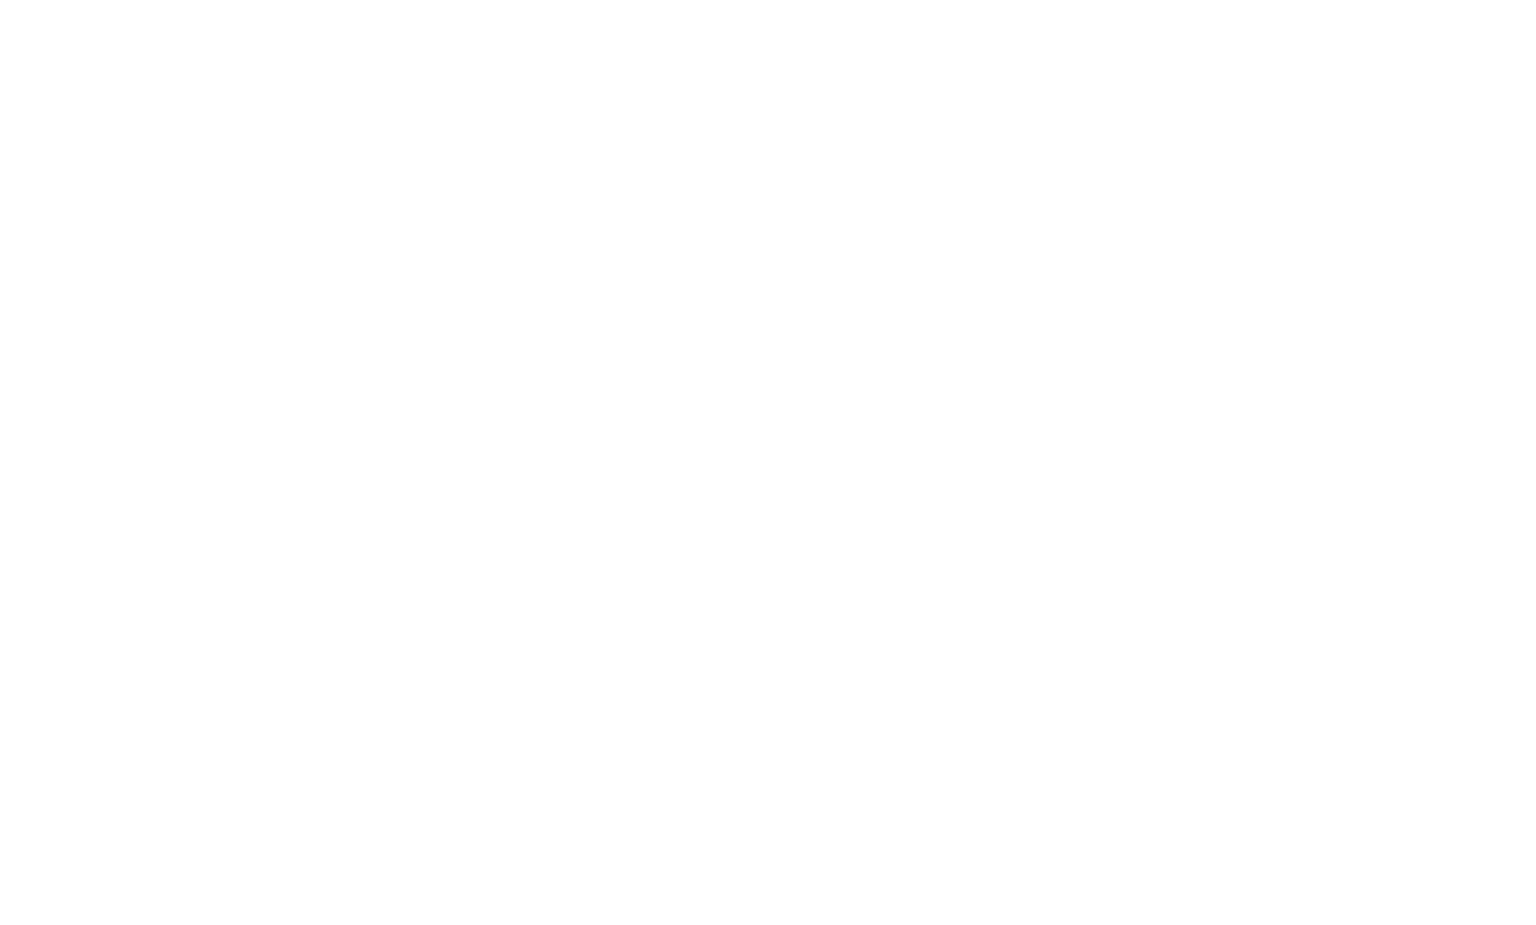 Cable Dahmer automotive group logo